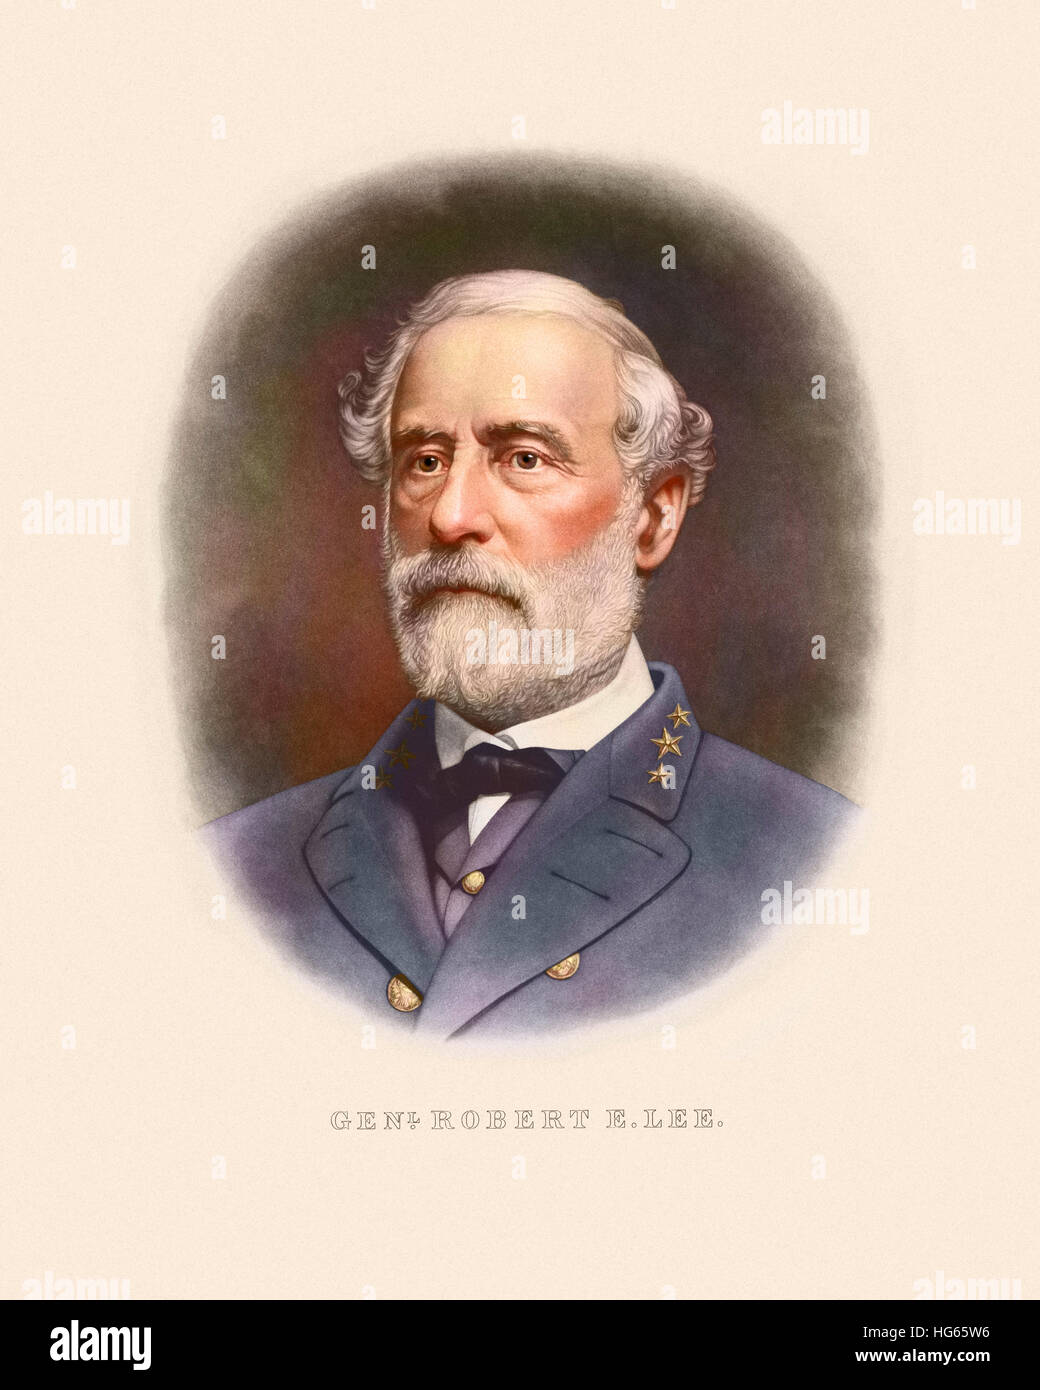 Civil War artwork of Confederate General Robert E. Lee. Stock Photo